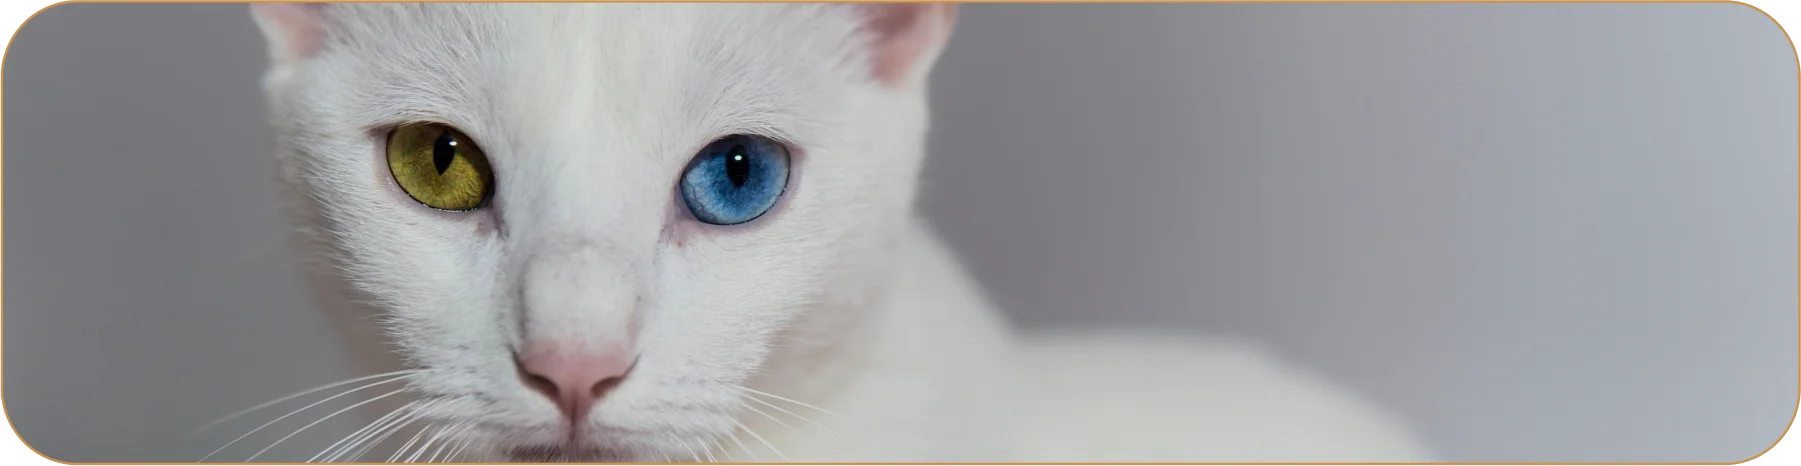 Кошки с разноцветными глазами считаются символом удачи